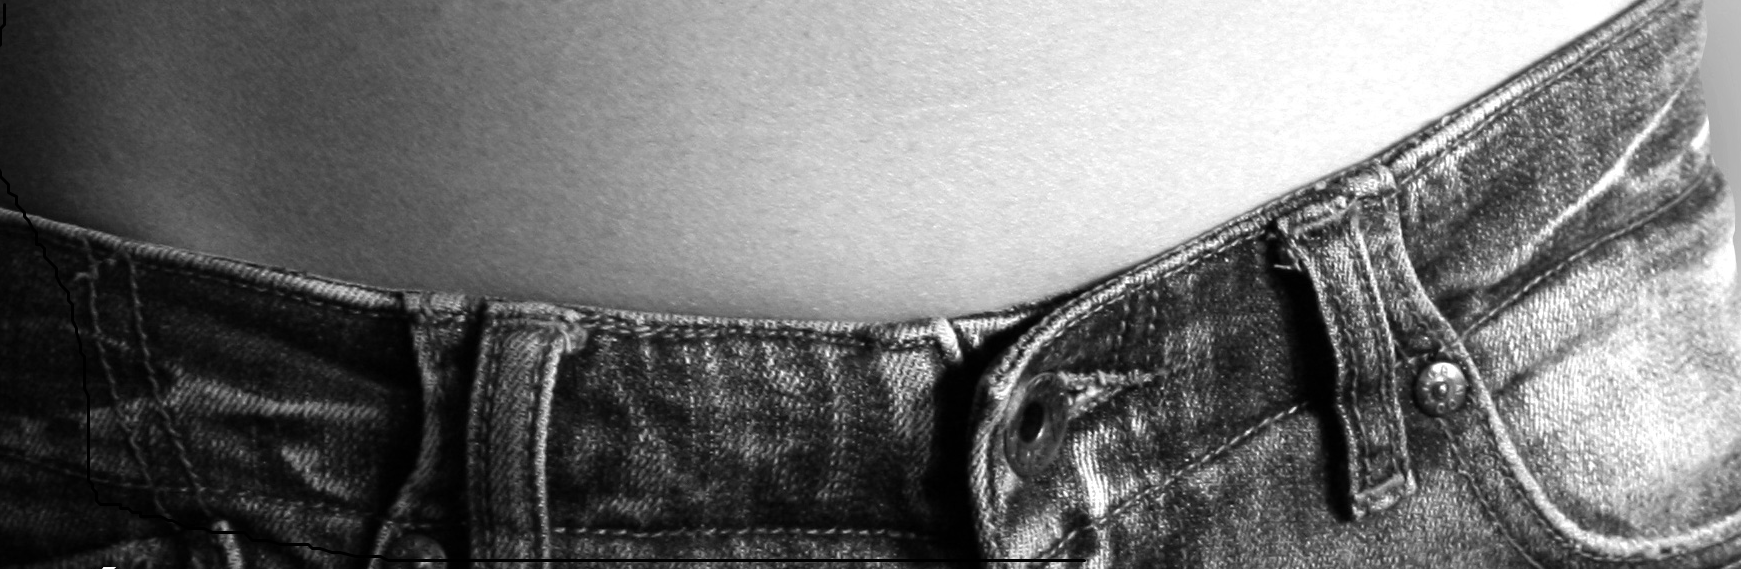 Imagen que muestra un pantalón vaquero abrochado y parte del abdomen de una persona